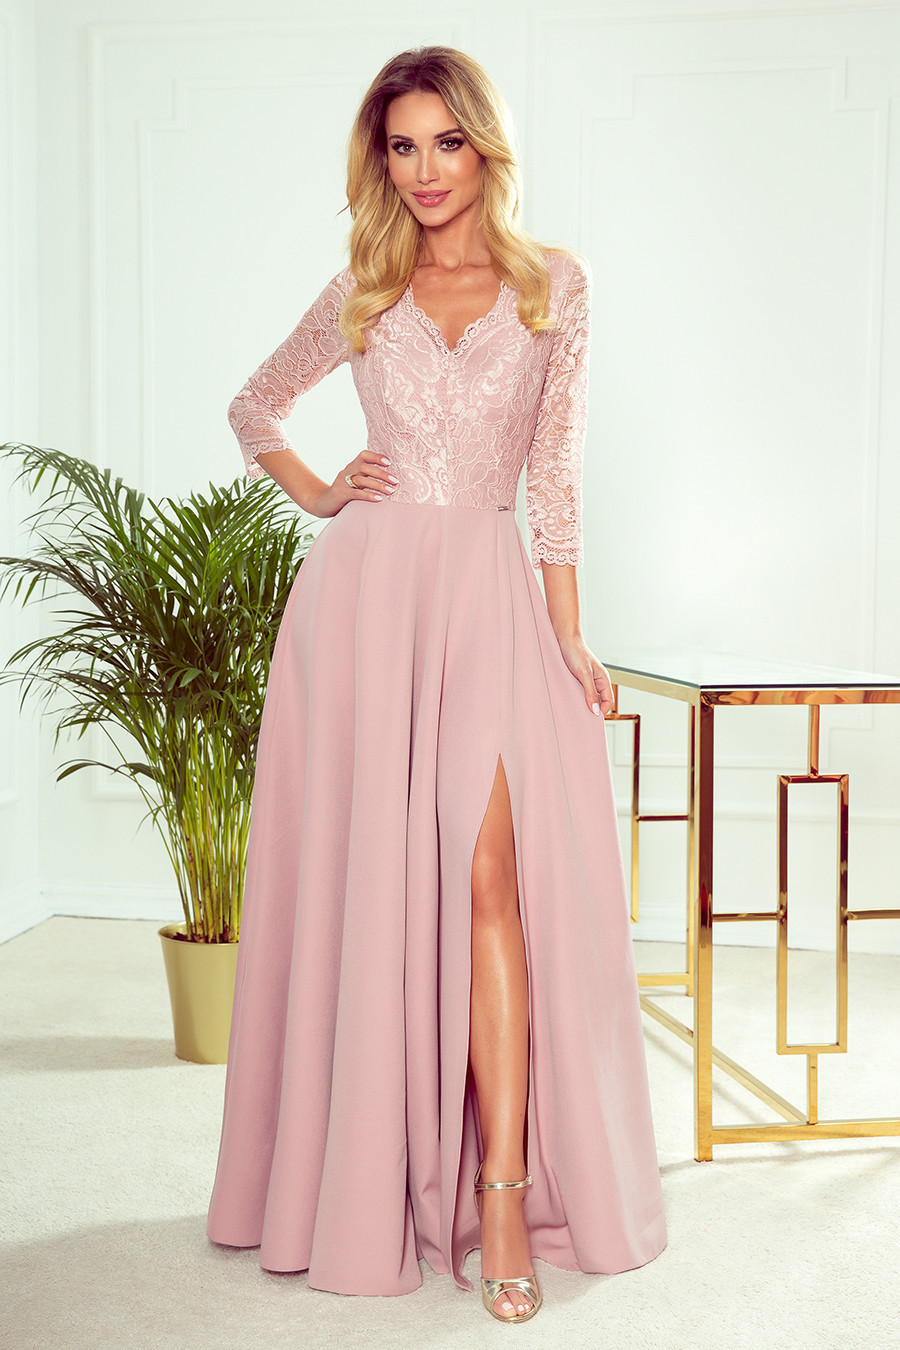 AMBER - Elegantní dlouhé krajkové dámské šaty v pudrově růžové barvě s dekoltem 309-4 M